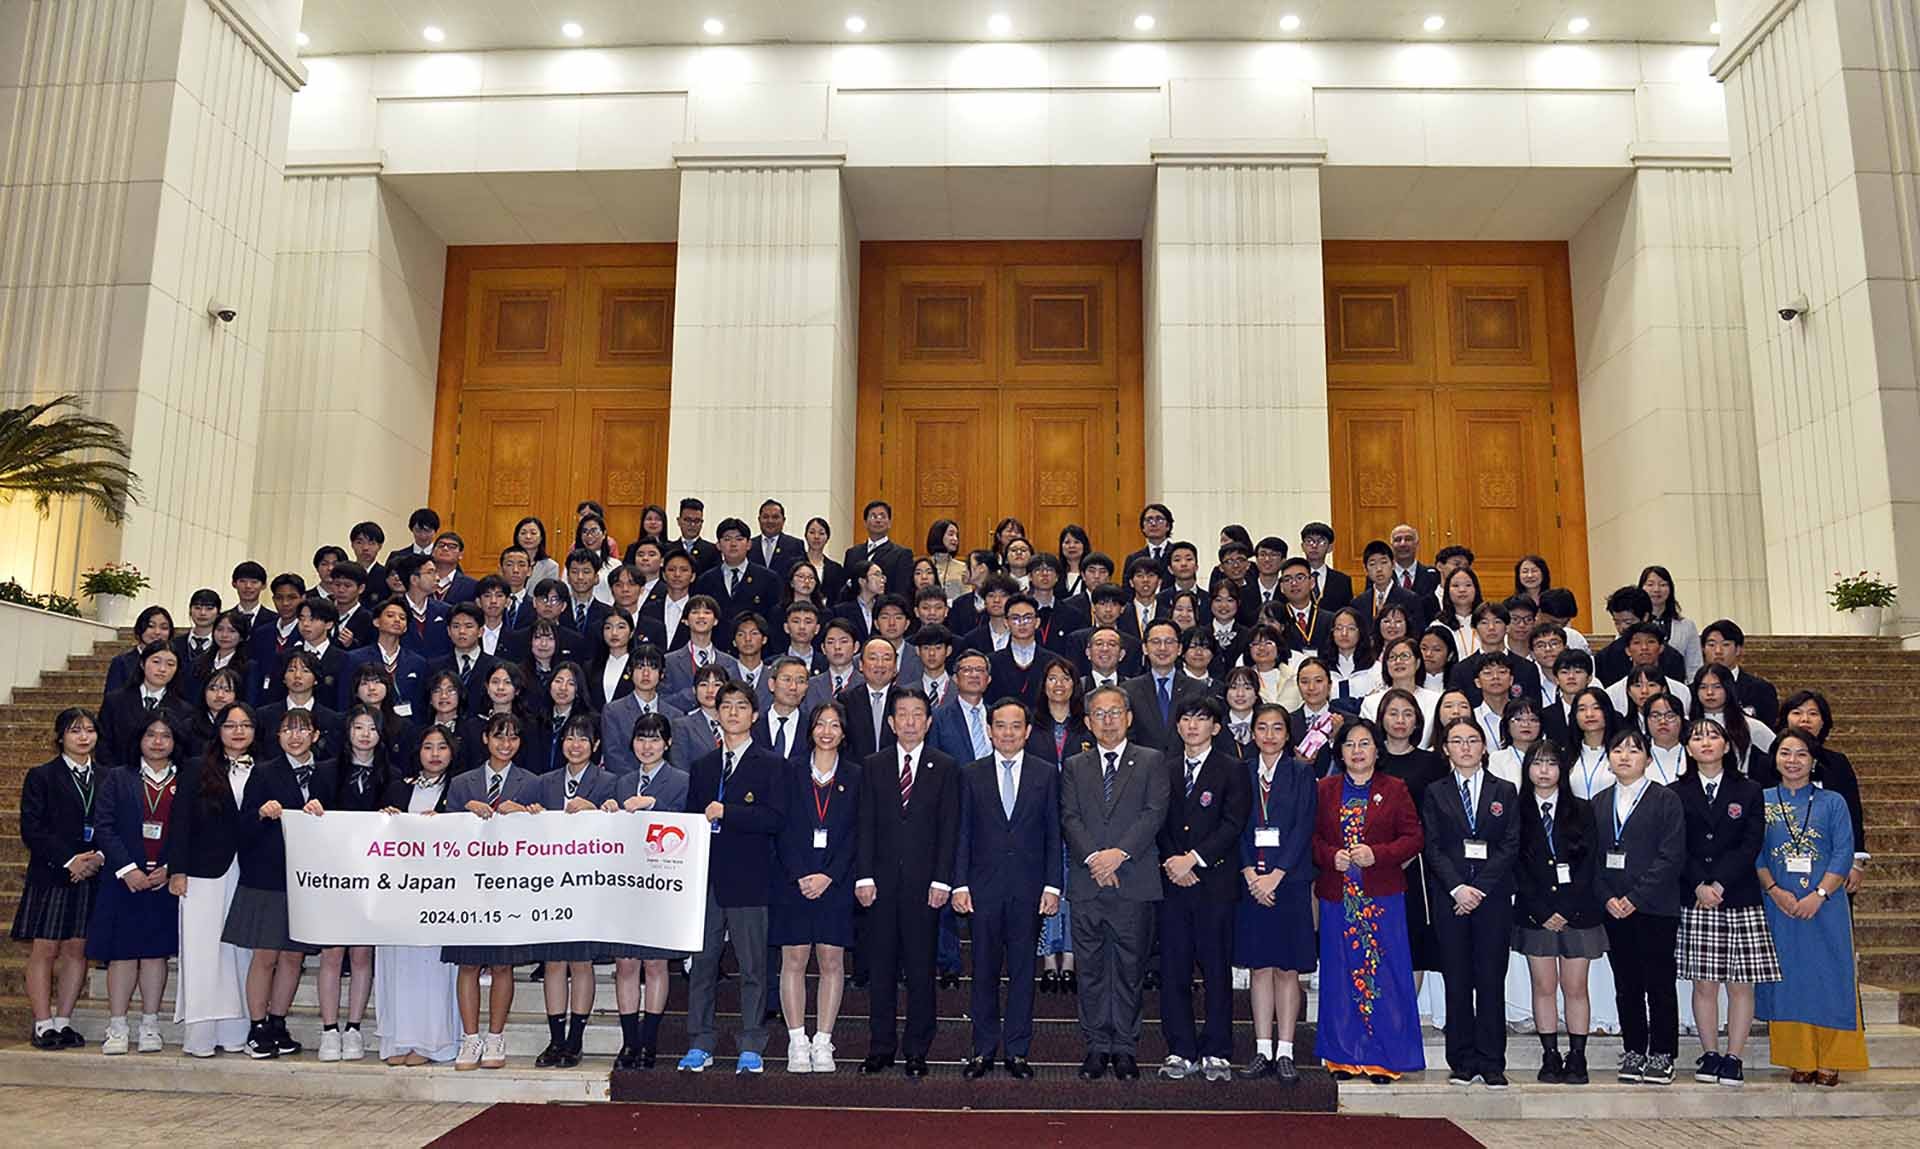 Phó Thủ tướng Trần Lưu Quang cùng đoàn học sinh, sinh viên Việt Nam và Nhật Bản tham dự Chương trình Đại sứ Thanh thiếu niên.  (Nguồn: VGP)